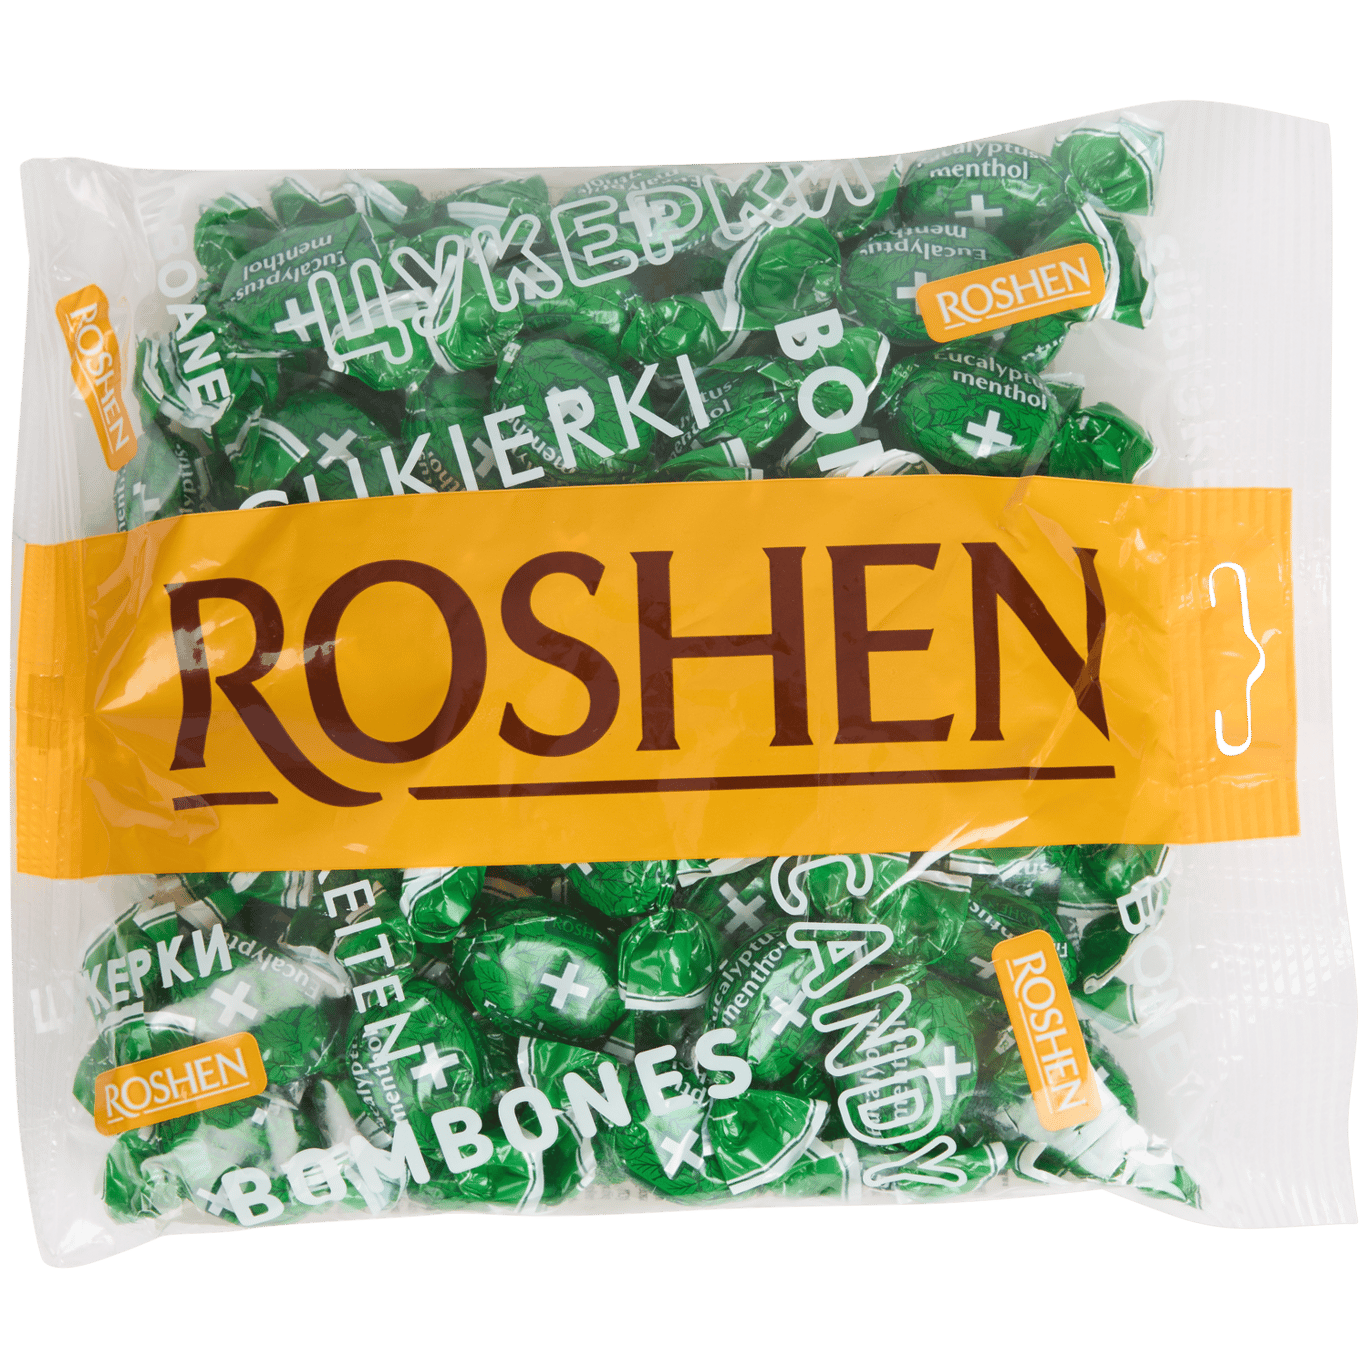 Pastillas para la garganta Roshen Mentol-eucalipto